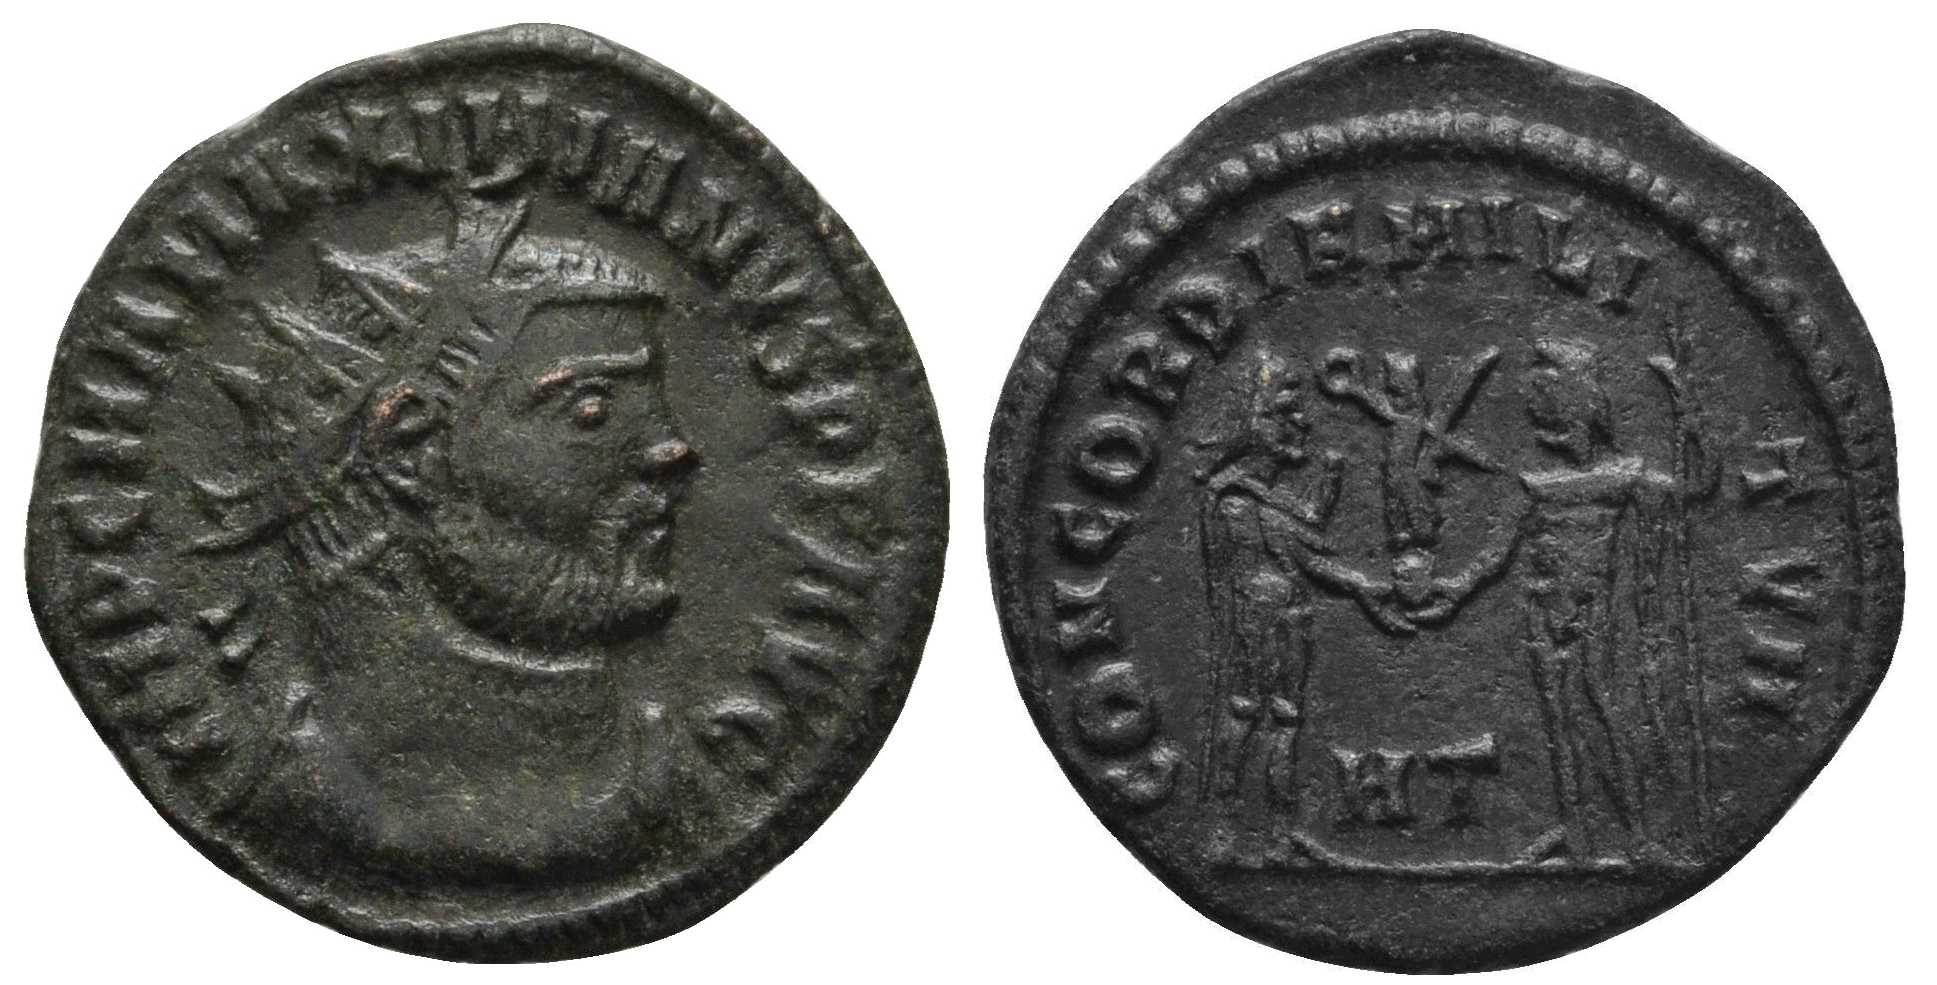 5924 Rome Maximianus Heracleia AE